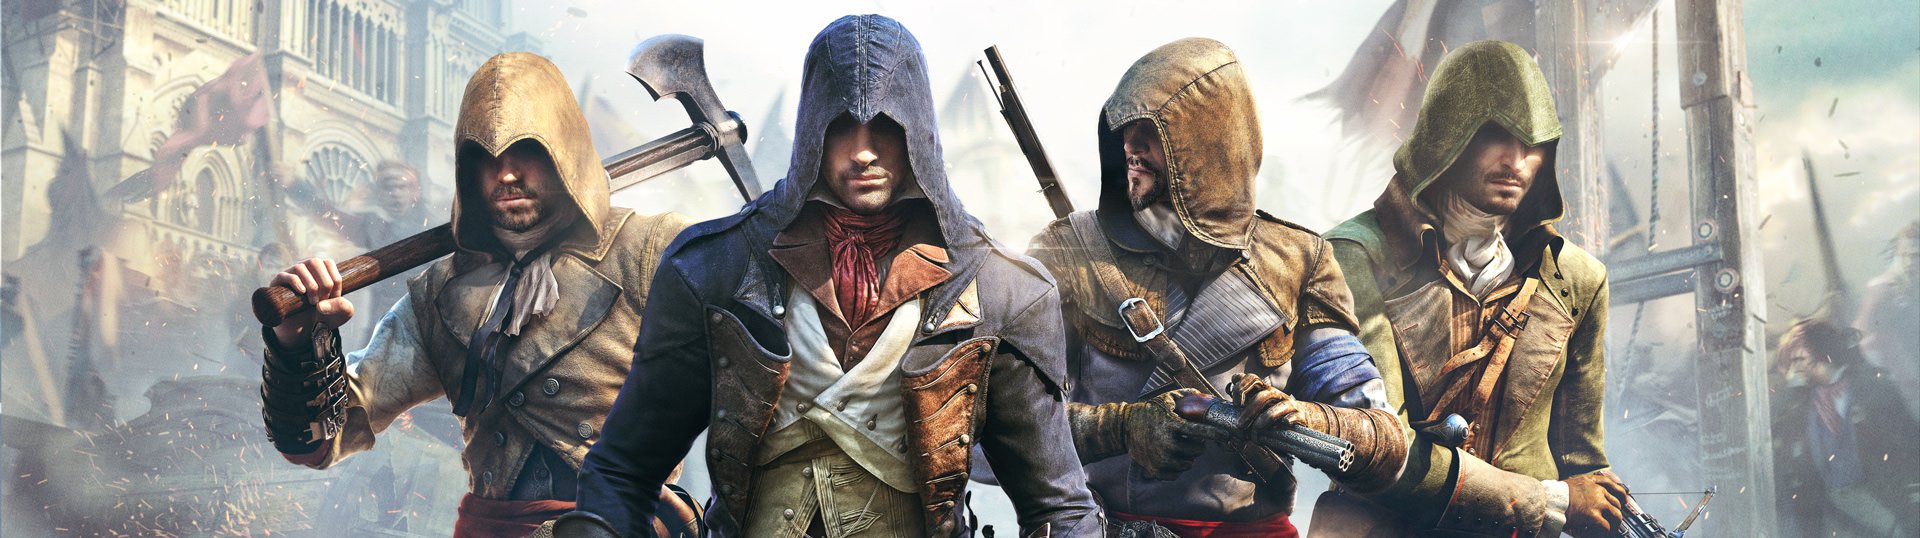 Saindo por R$ 15: Assassin's Creed Unity | PC | Pelando